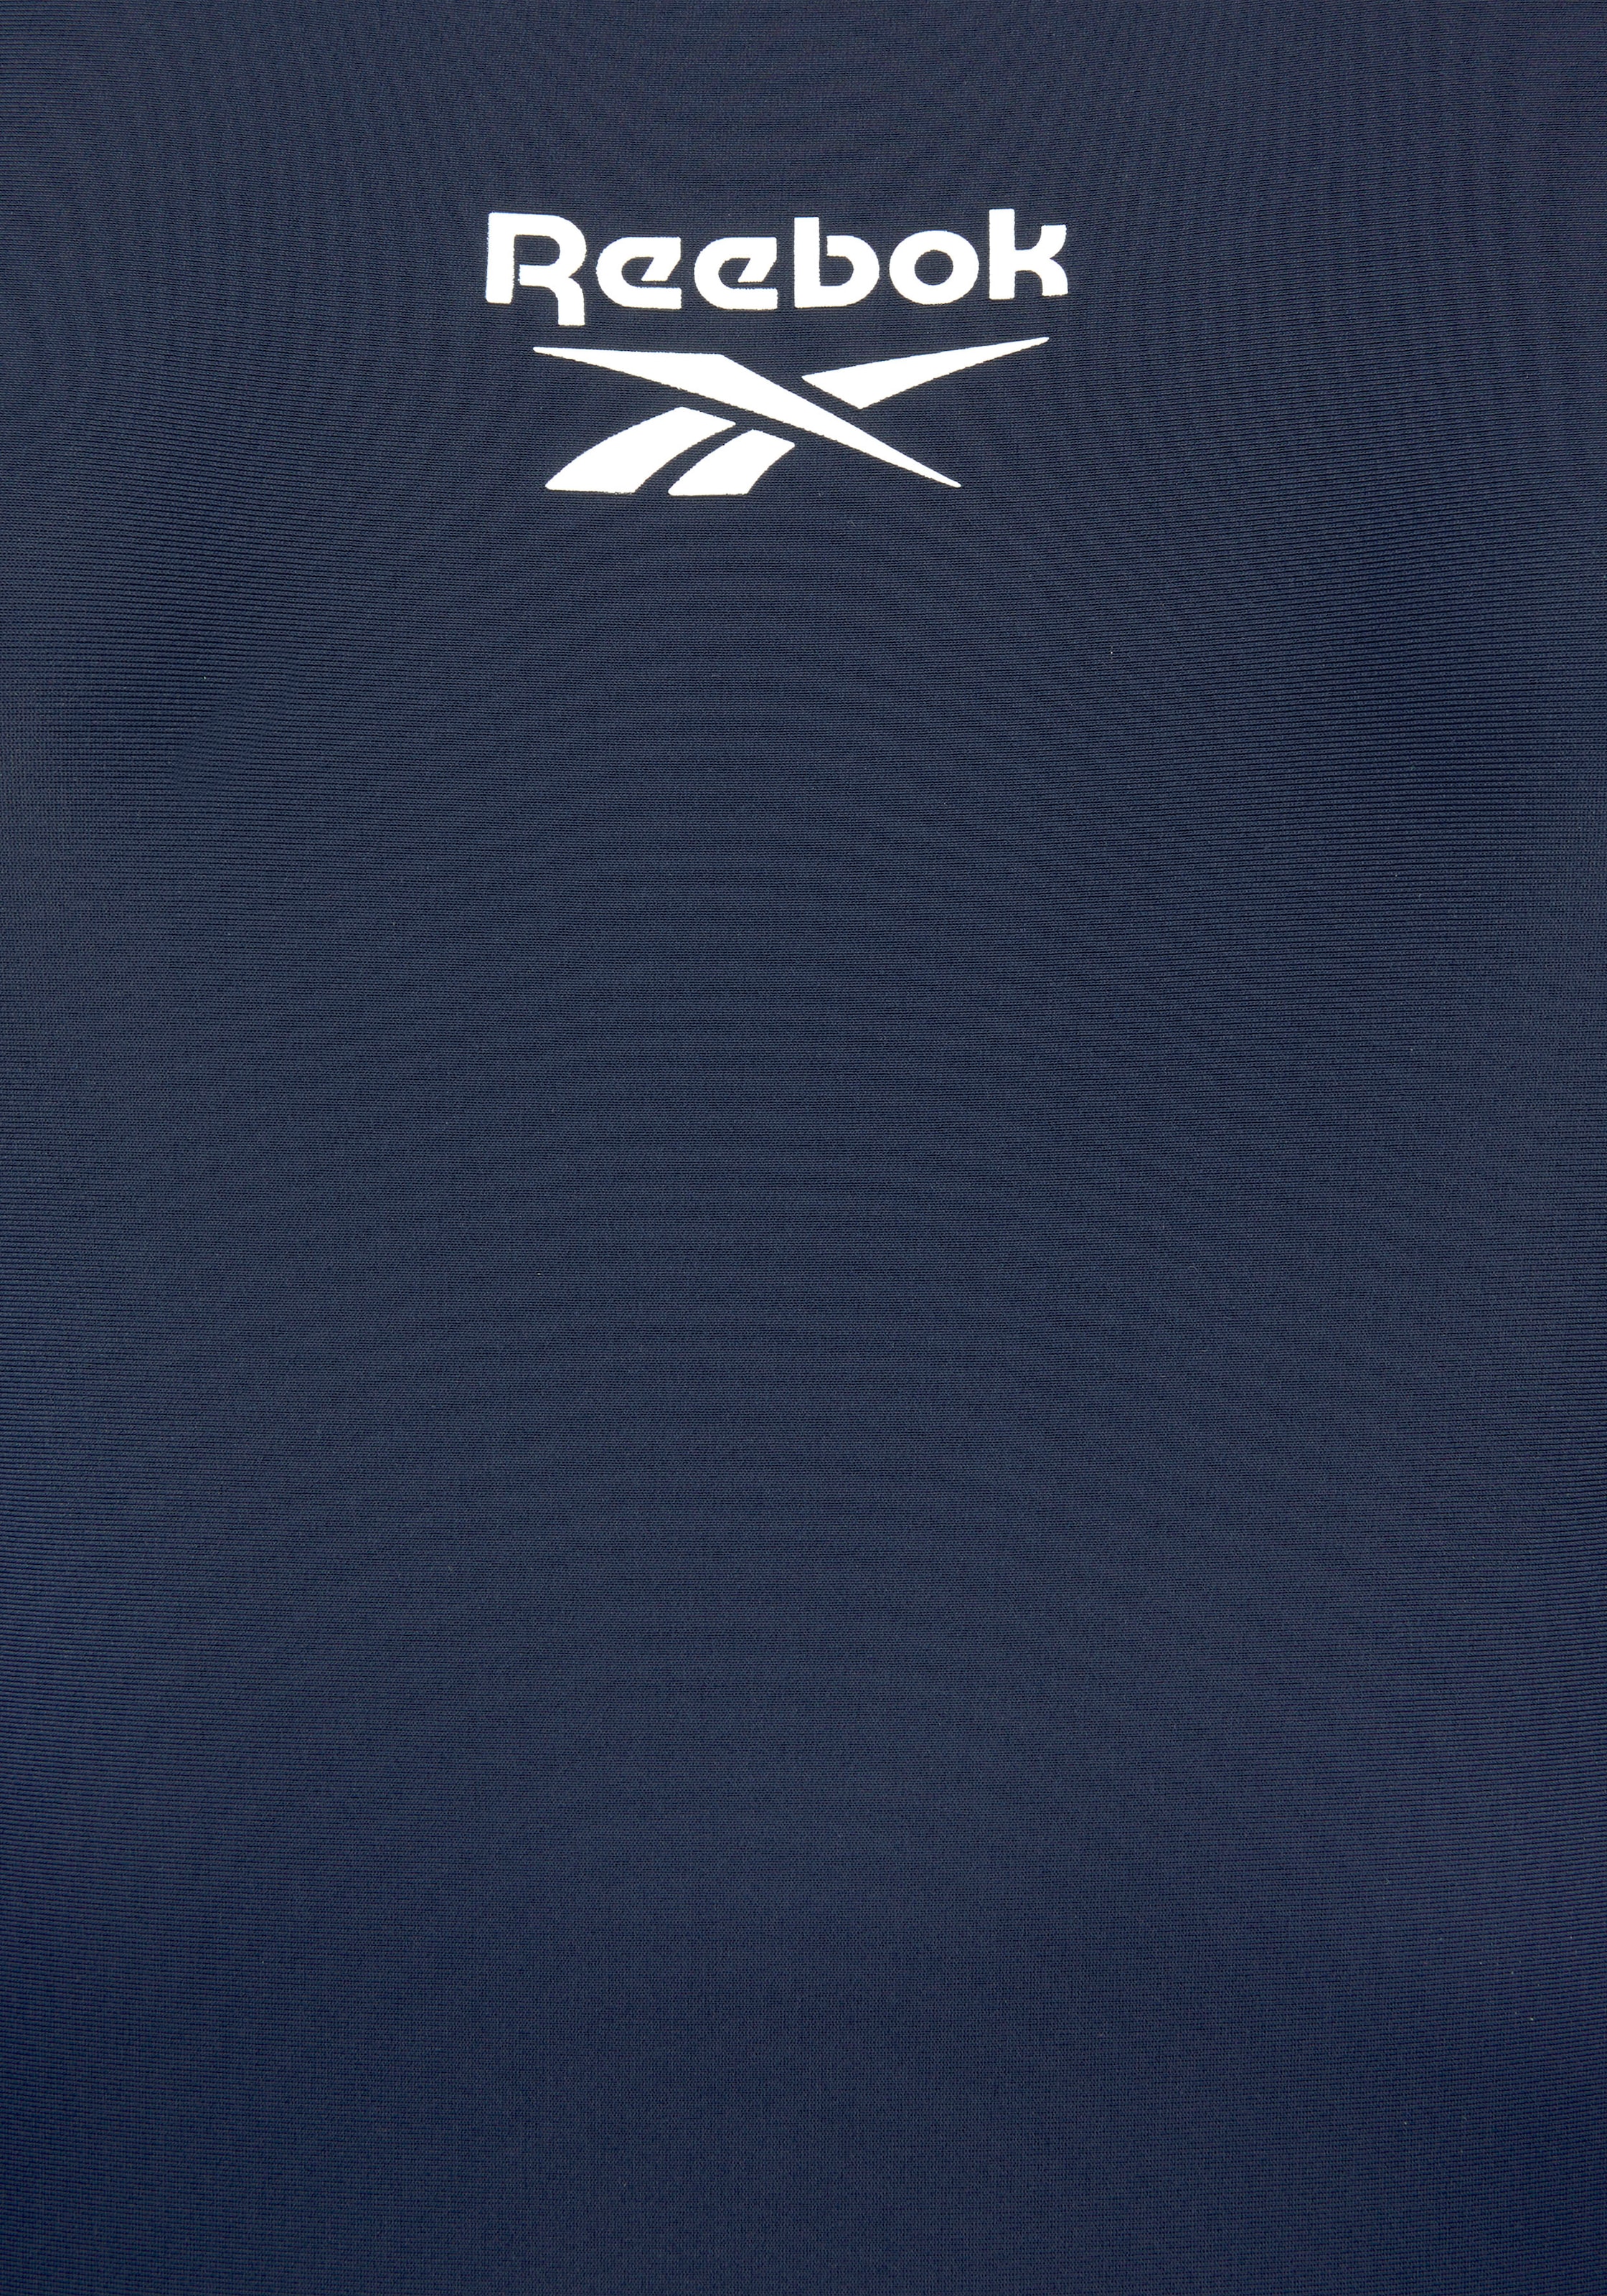 vorn Reebok mit Badeanzug Logoschriftzug am »Adelia«, Rücken und kaufen